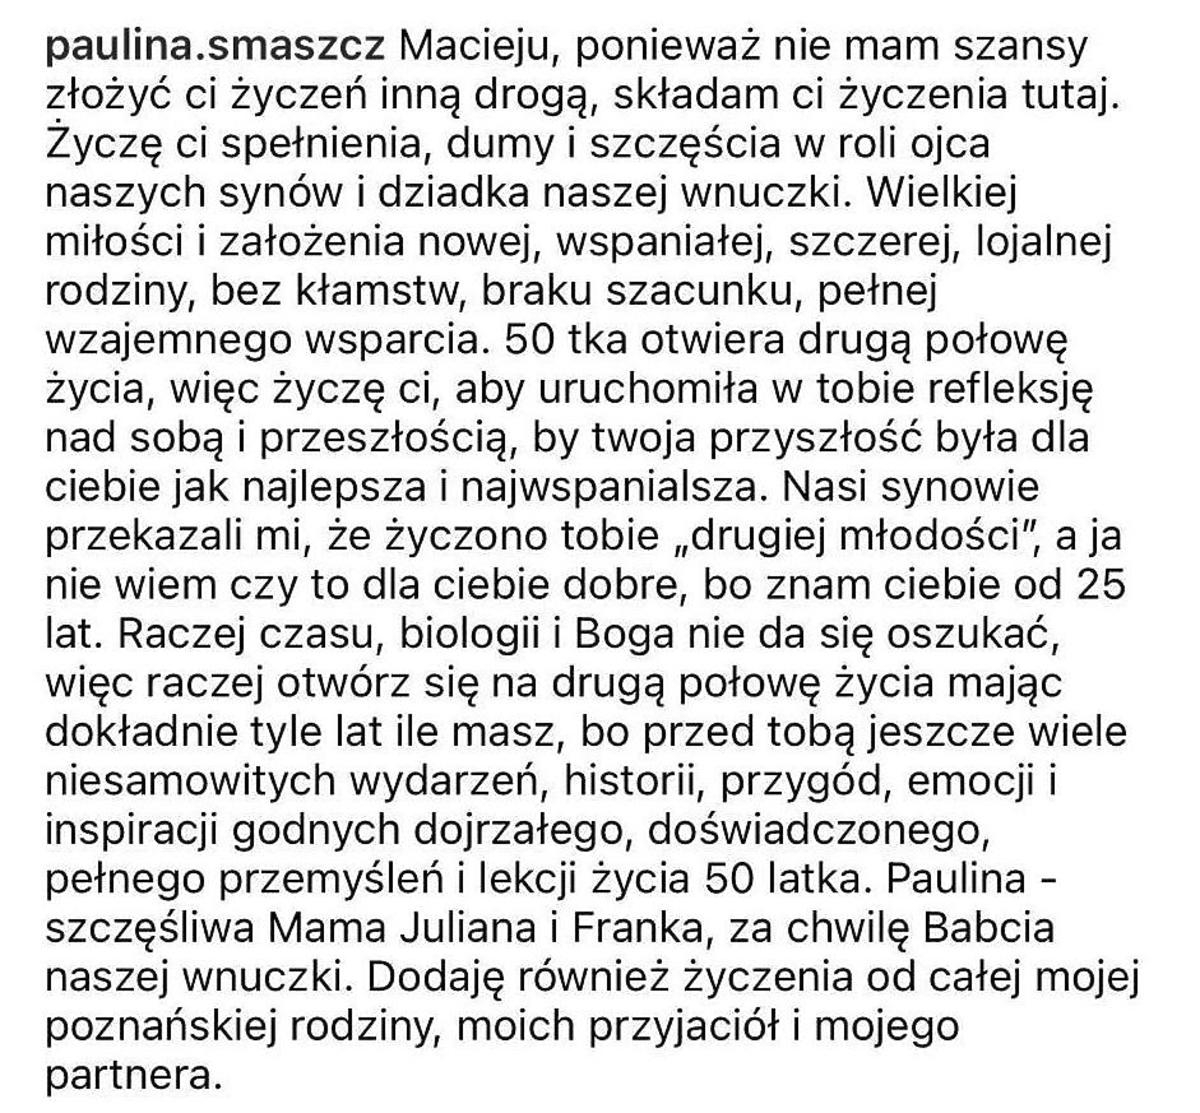 Paulina Smaszcz składa życzenia Maciejowi Kurzajewskiemu